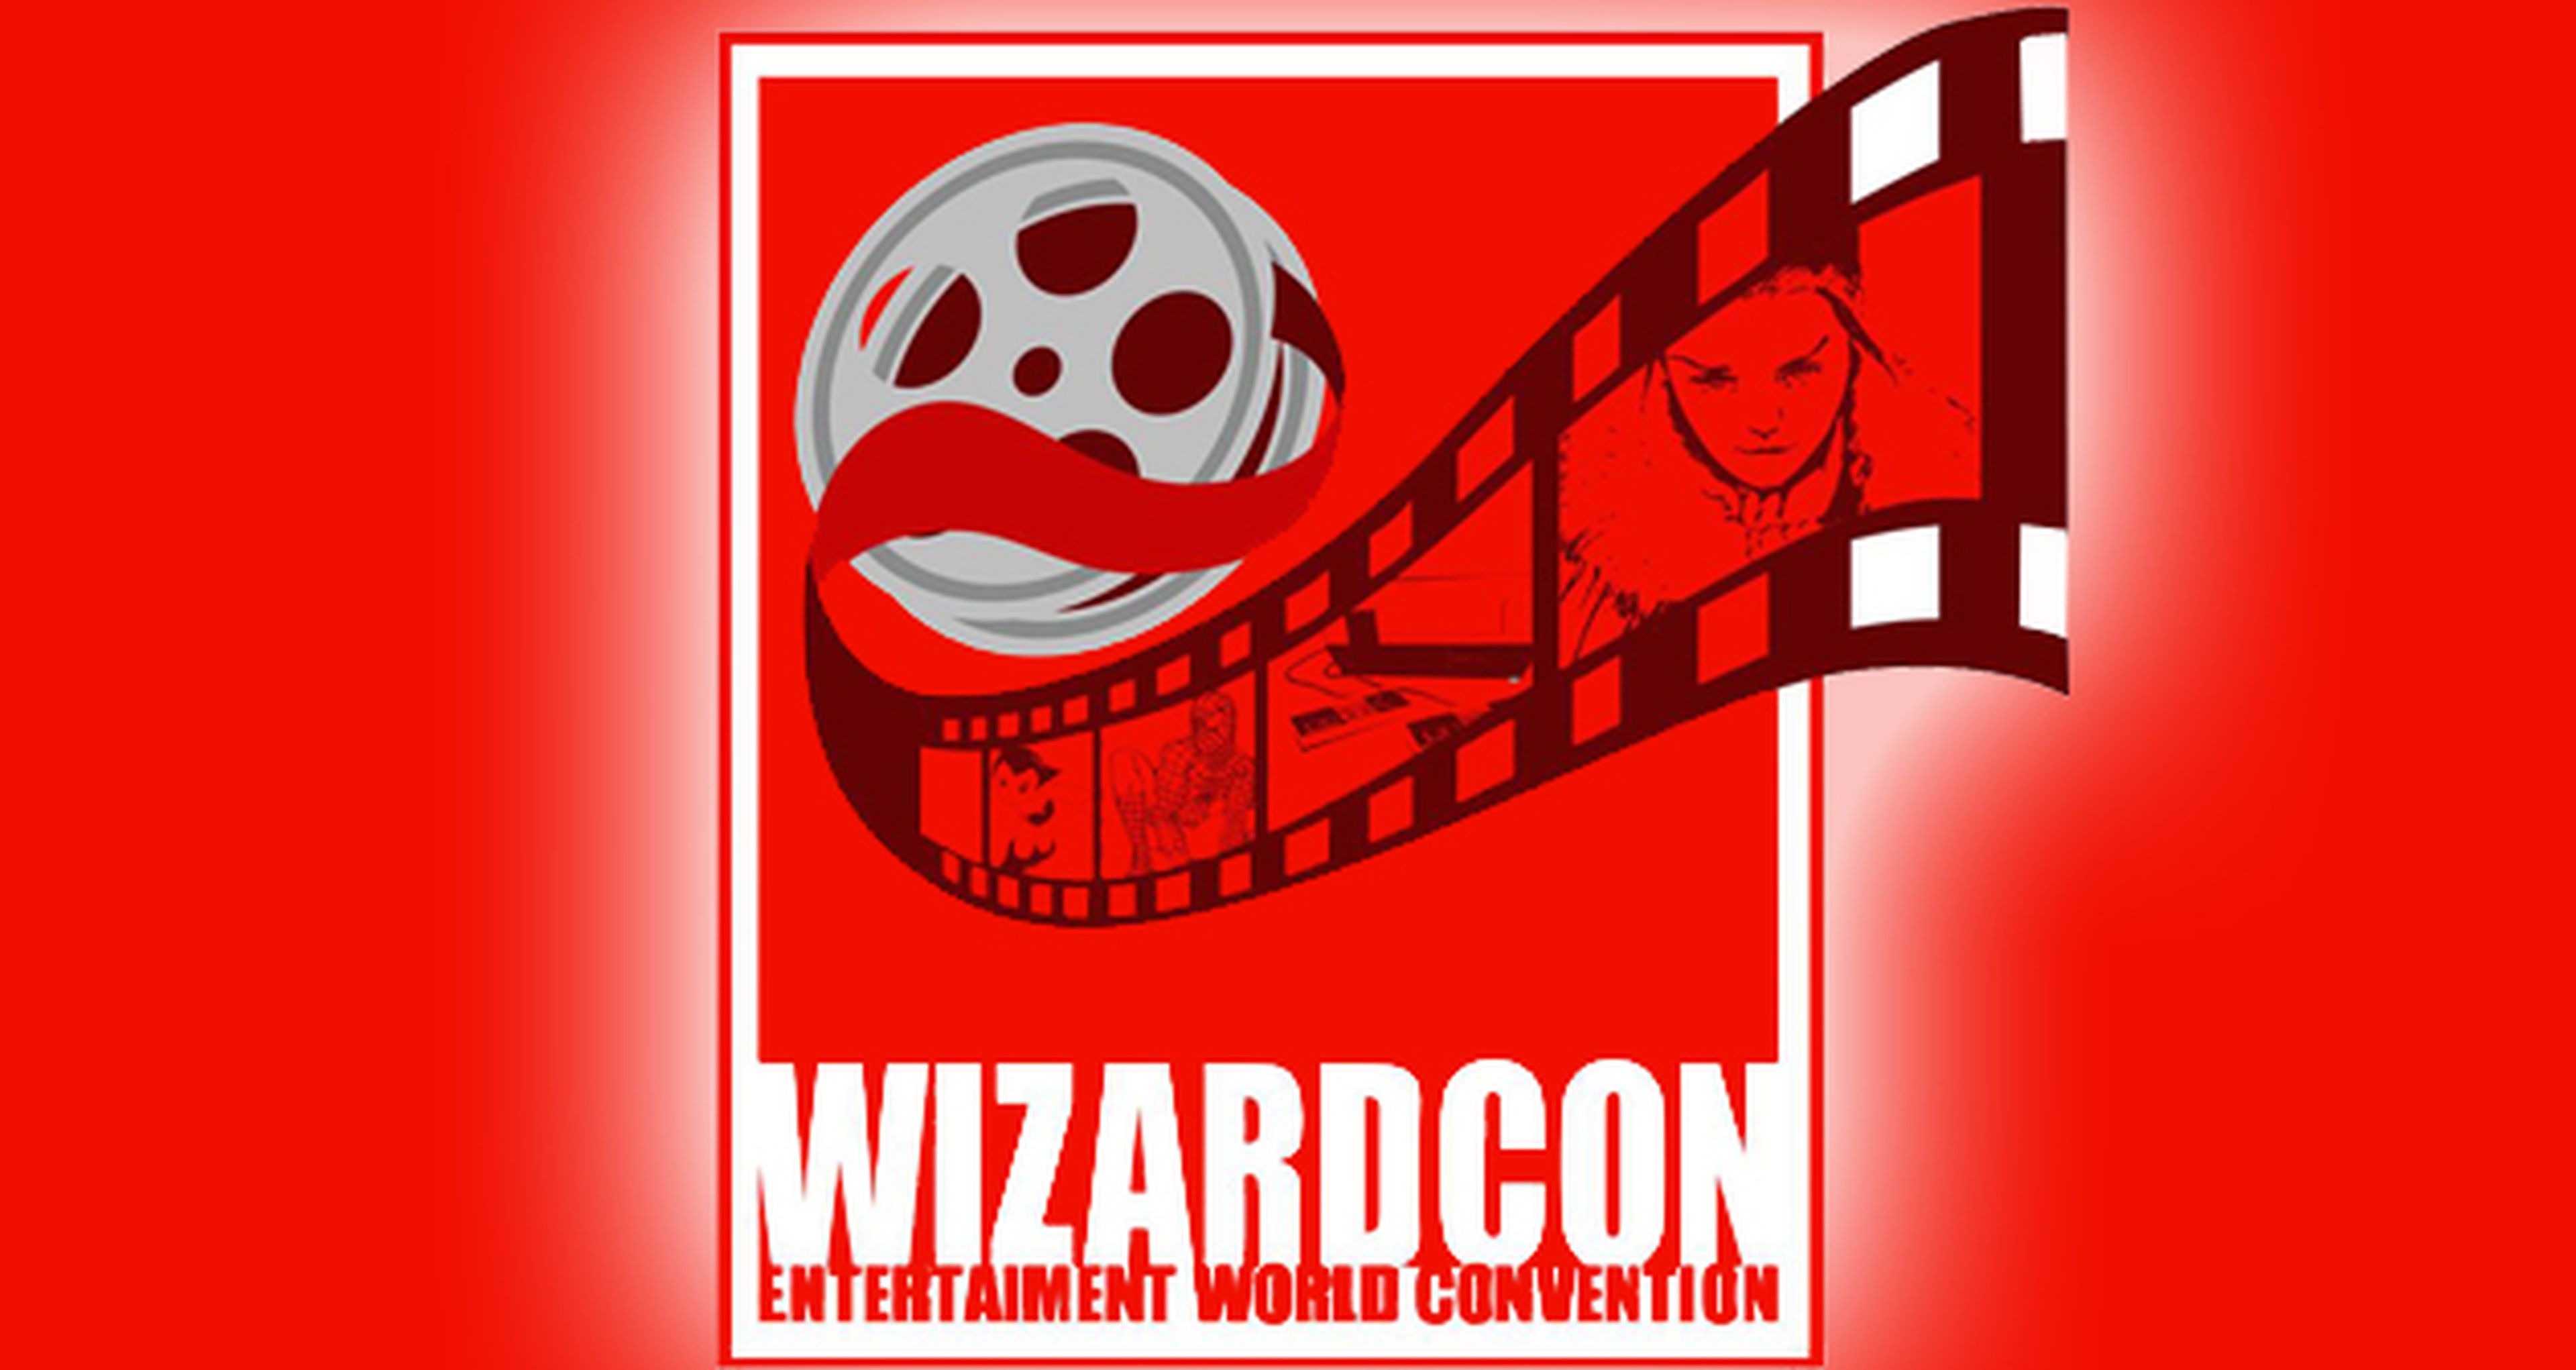 Concurso Wizard Con: ¡Ganadores de las 4 entradas dobles!